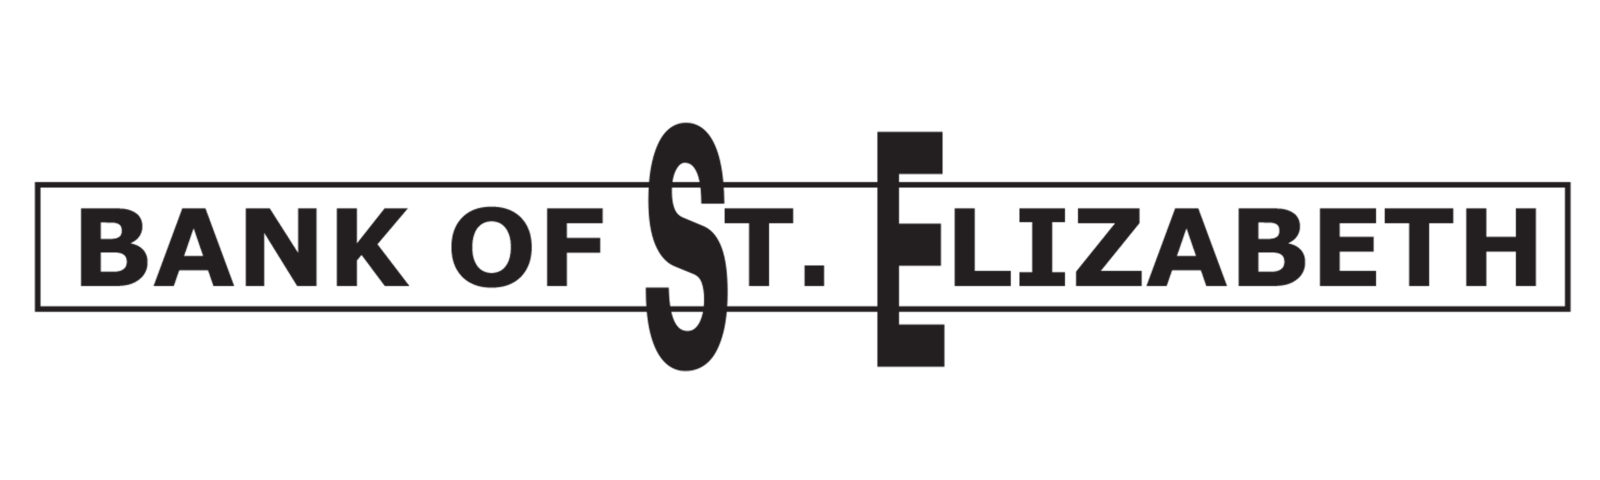 Bank of St. Elizabeth Logo 